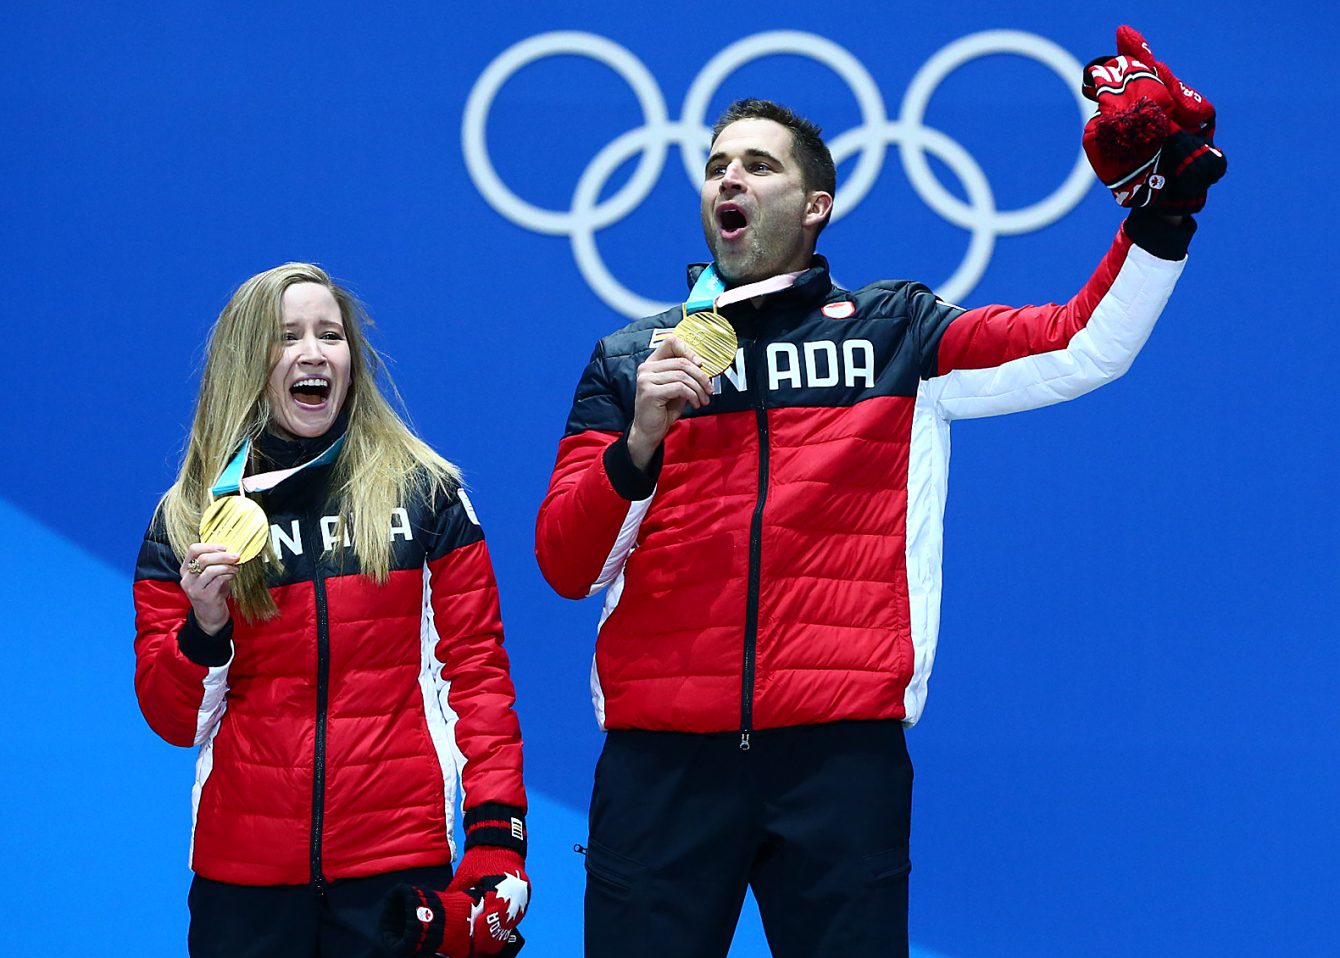 Kaitlyn Lawes et John Morris reçoivent leur médaille d'or en curling double mixte à la Place olympique de PyeongChang 2018, à Gangneung, en Corée du Sud, le 14 février 2018. (Photo : Vaughn Ridley/COC)